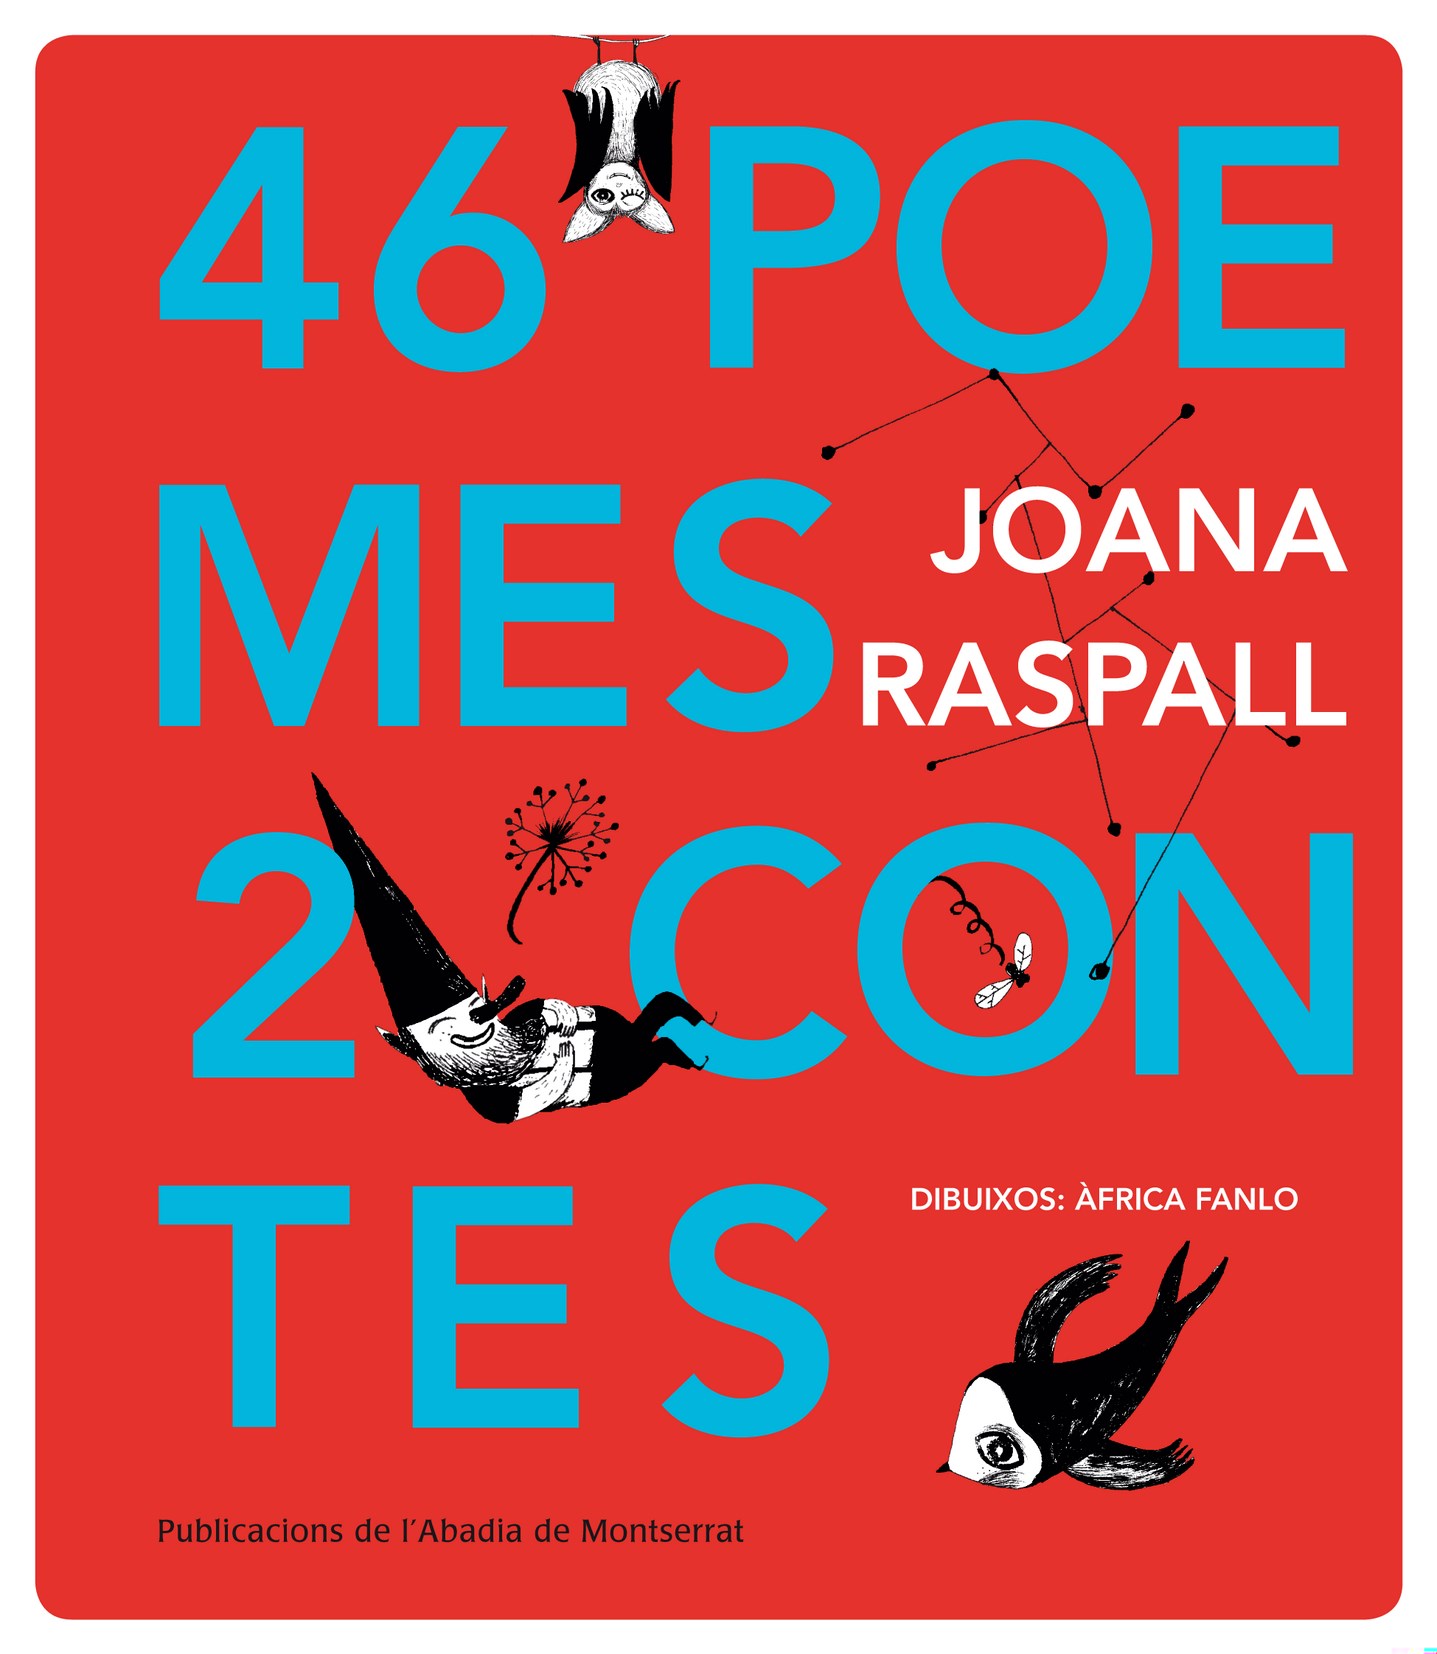 Joana Raspall i Juanola